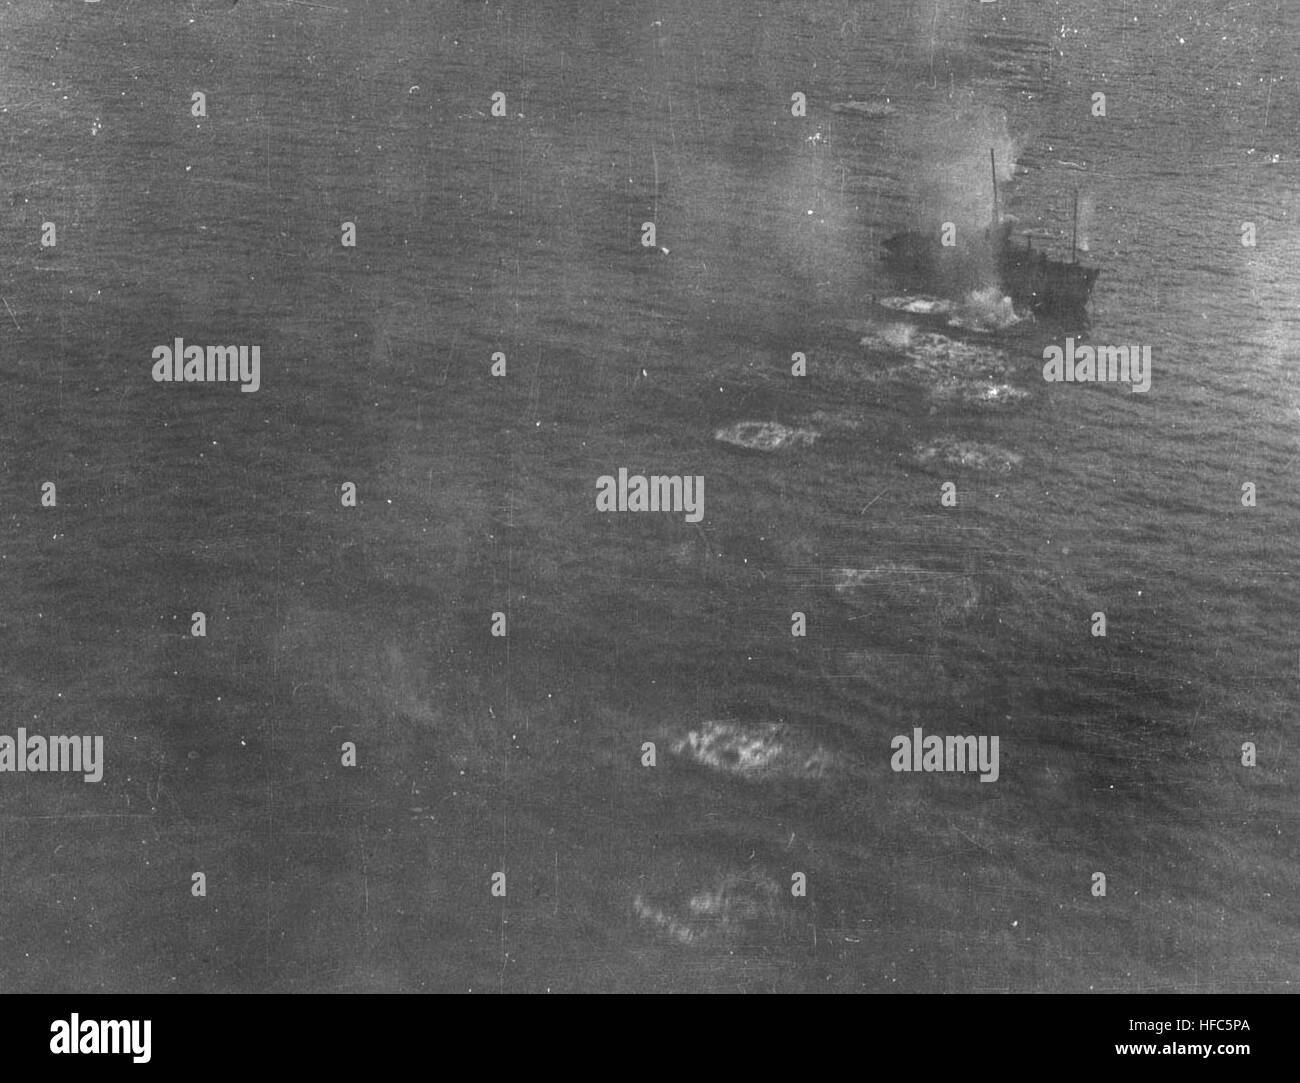 Japanisches Schiff unter Luftangriff von Hainan Insel 1945 Stockfoto